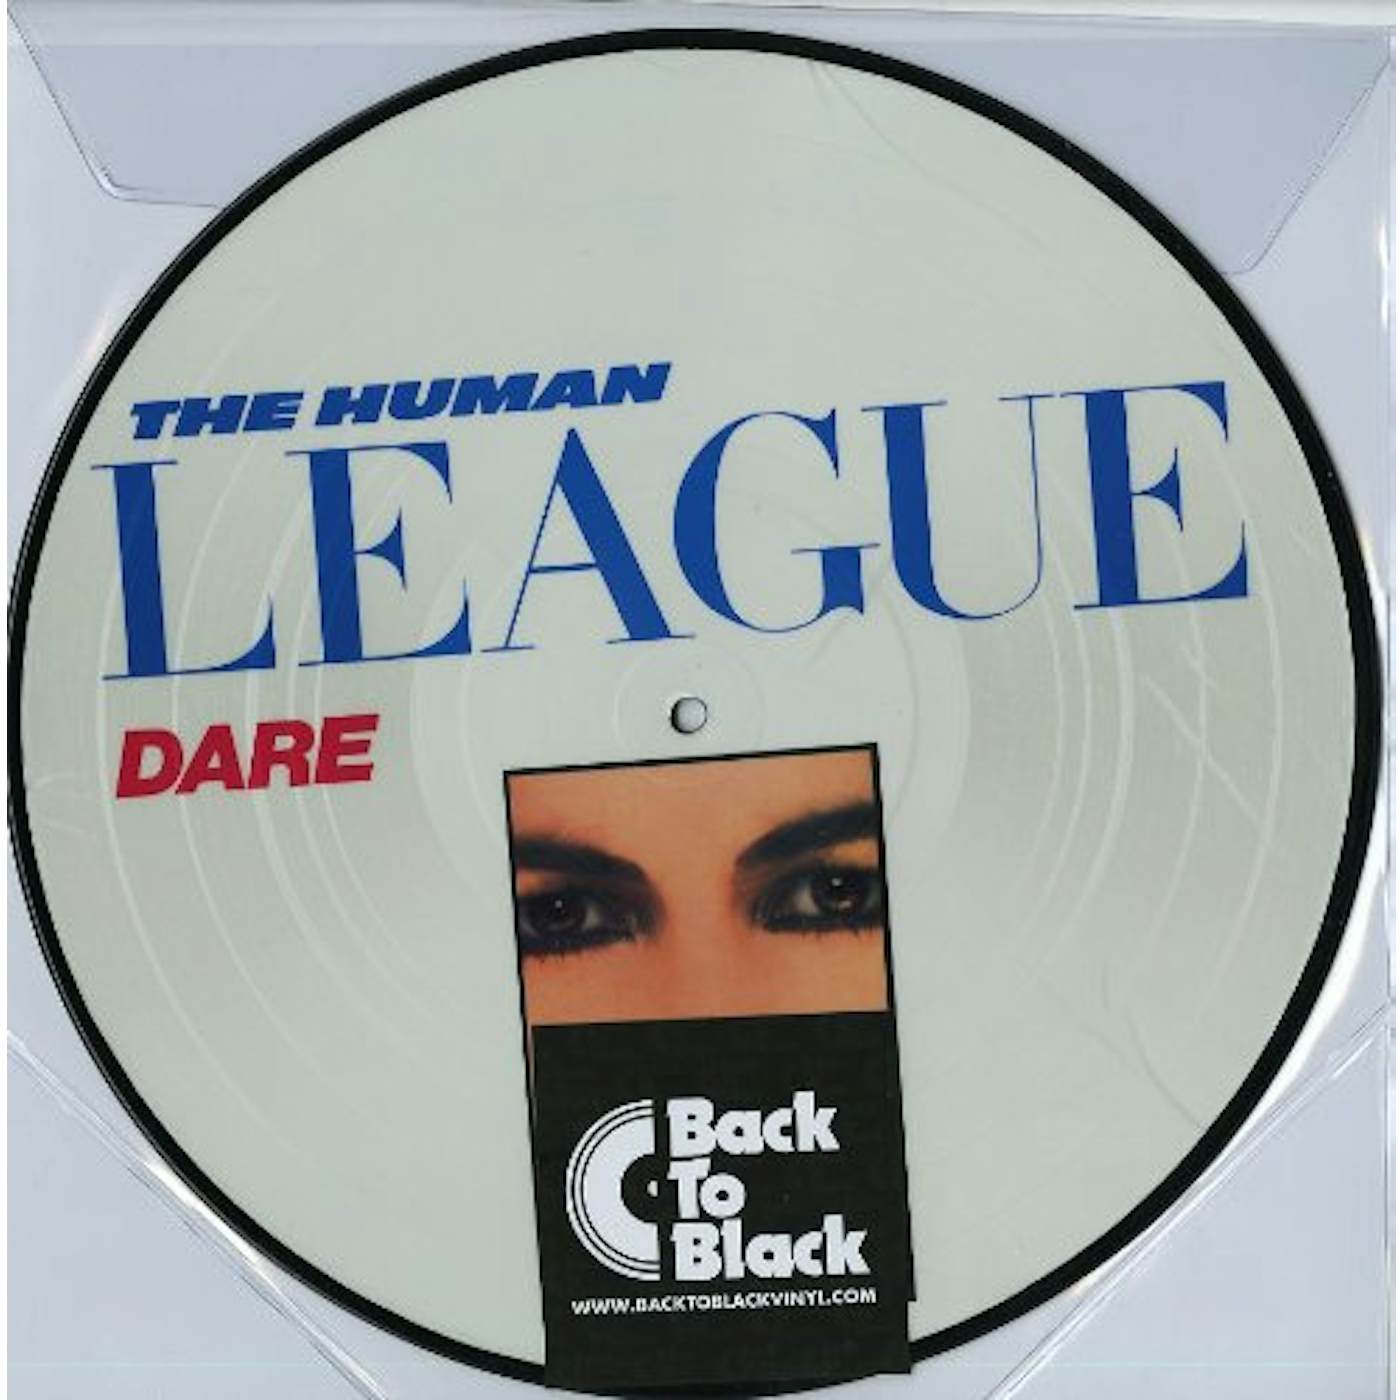 The Human League Dare Vinyl Record